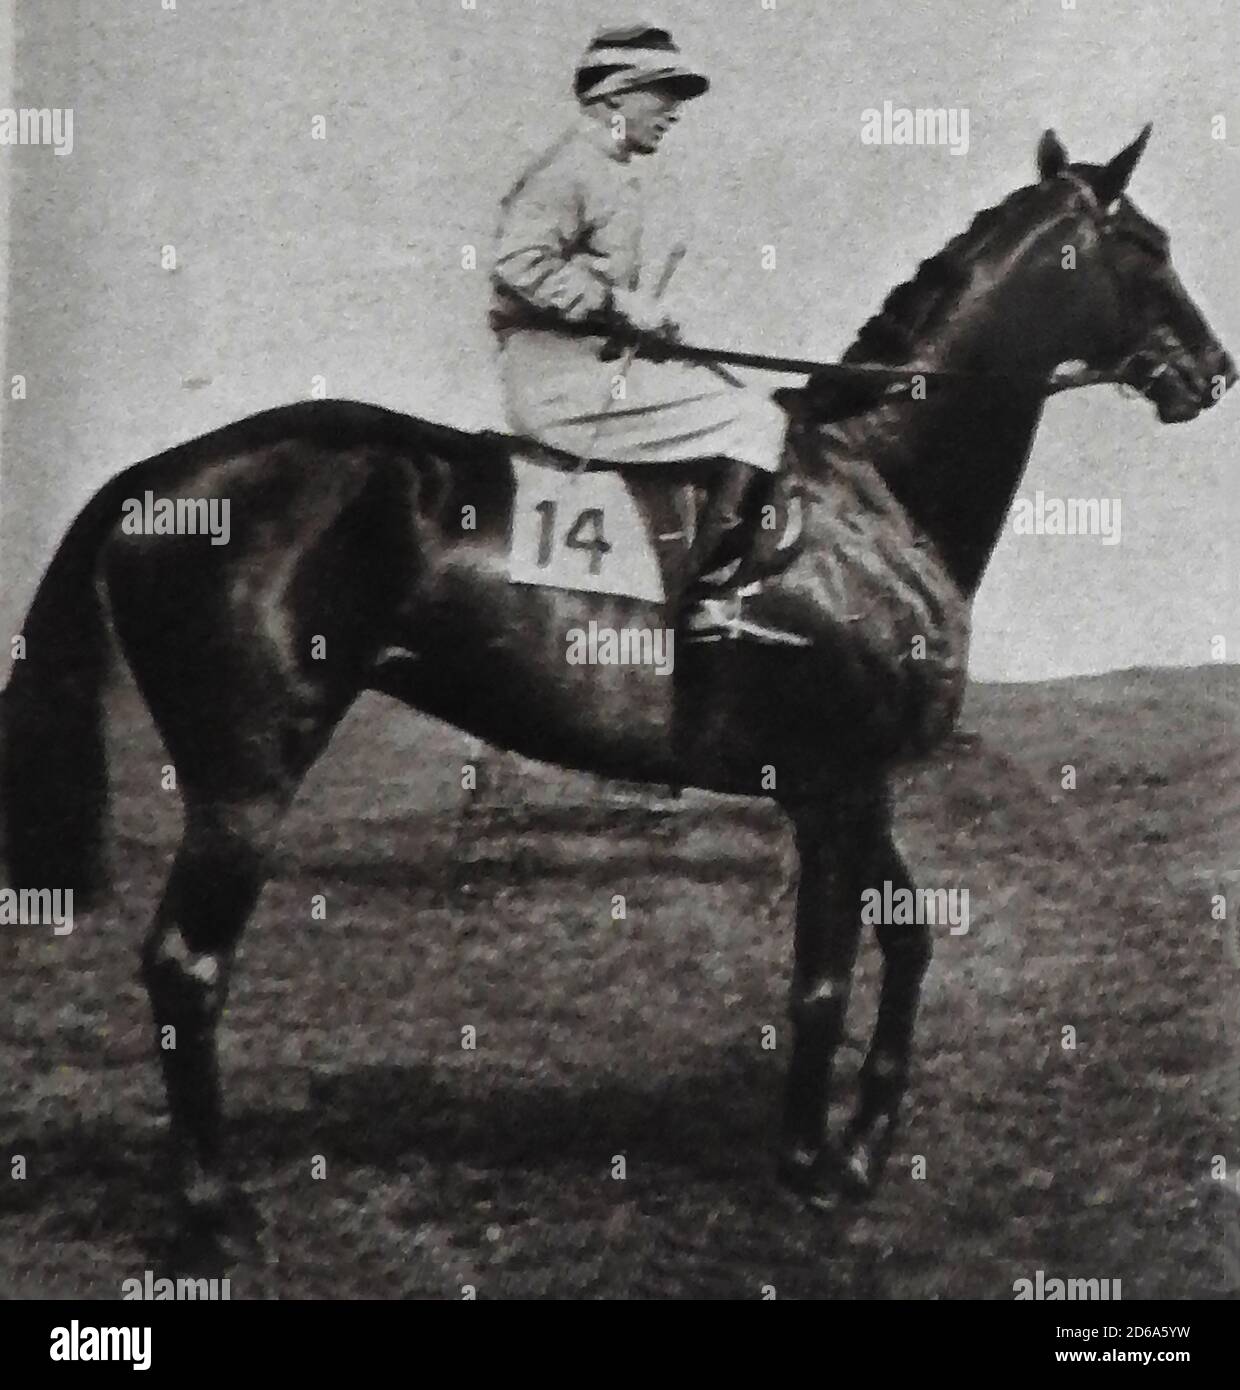 1925 VINCITORE DEL DERBY INGLESE - Steve Donoghue a cavallo della MANNA vincente, un ippodrome britannico e un siré che ha vinto anche la 2000, 1925 Guineas a Newmarket. Manna era un cavallo di baia allevato in Irlanda da James J. Maher al suo prigioniero di Confey nella contea Kildare. Il suo proprietario H Morriss (un mediatore del bullion) ha detto che il nome dei cavalli gli è stato dato perché era un regalo del cielo-inviato! Steve Donoghue (1945 – 1884) è stato un . Si dice che ha deciso di prendere la professione dopo aver vinto un premio per la guida di un asino circo. Foto Stock